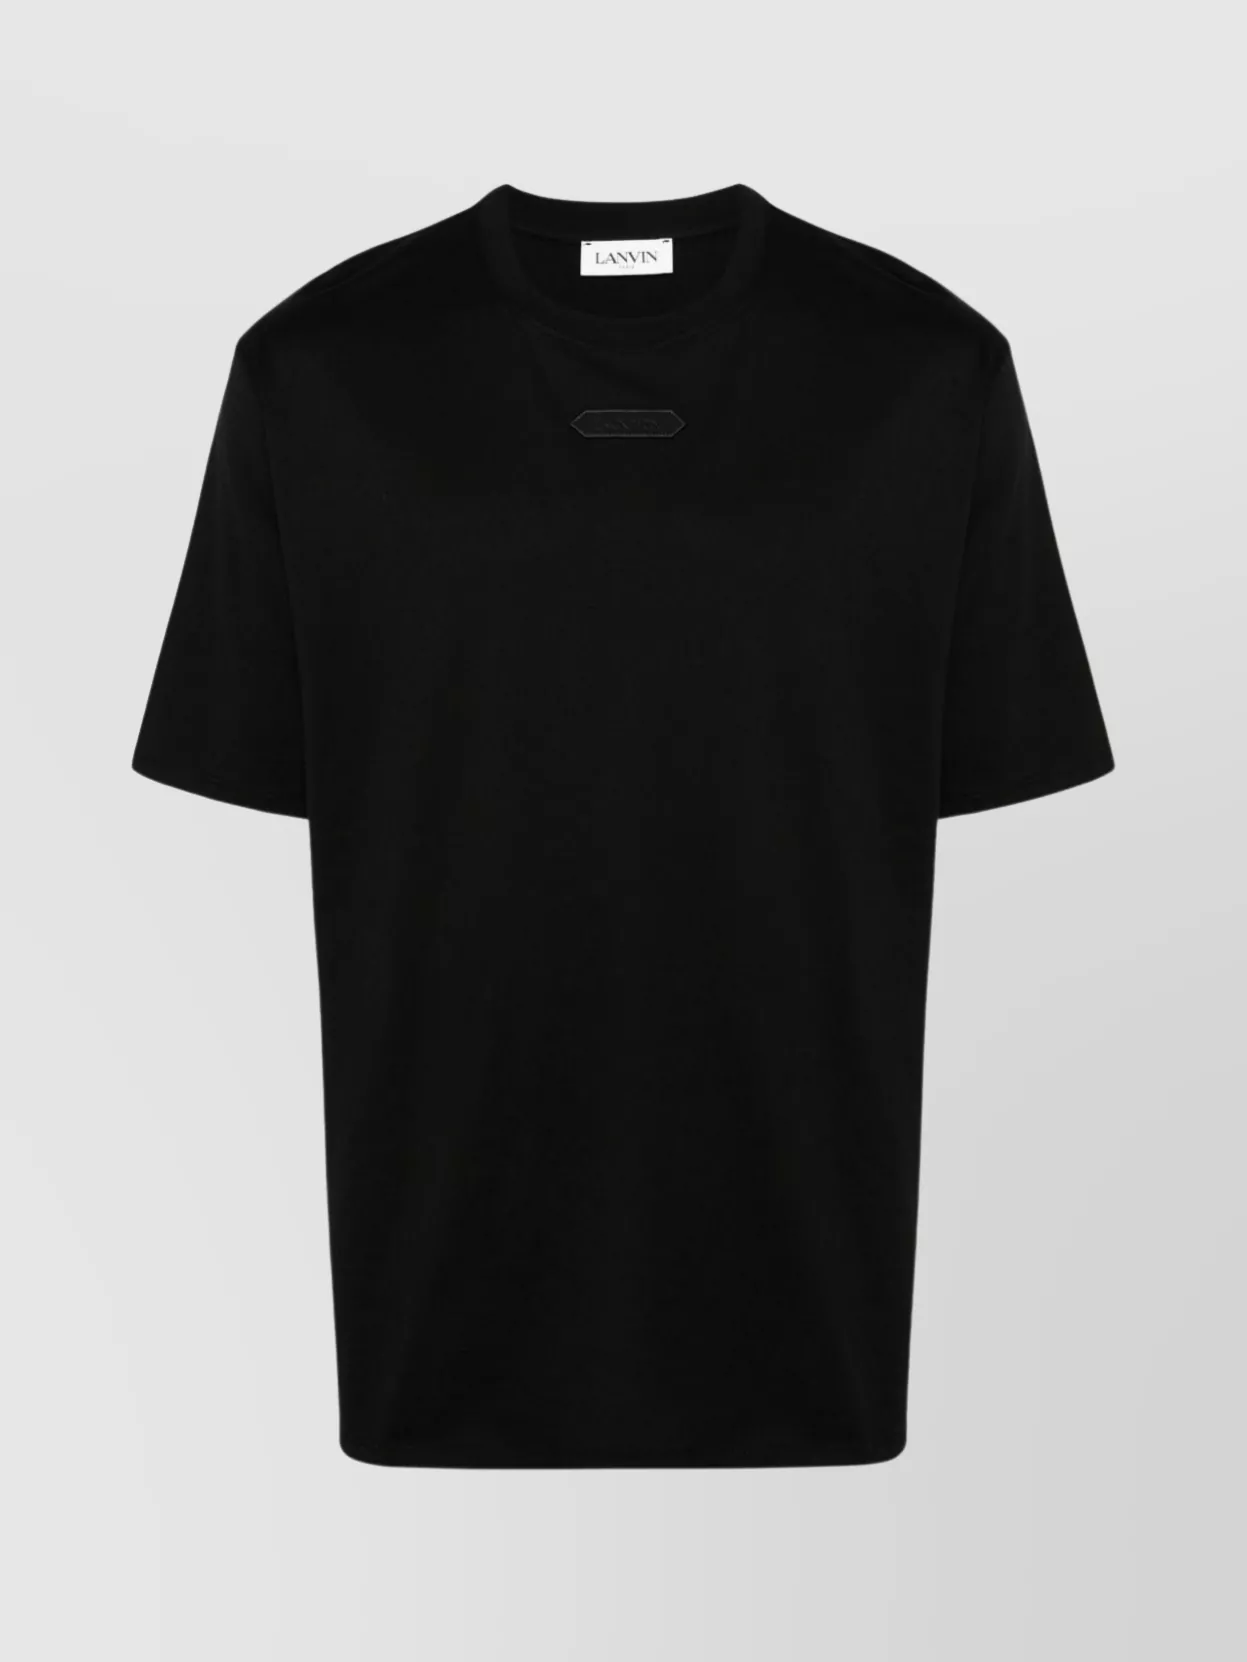 Shop Lanvin Versatile Crew Neck T-shirt